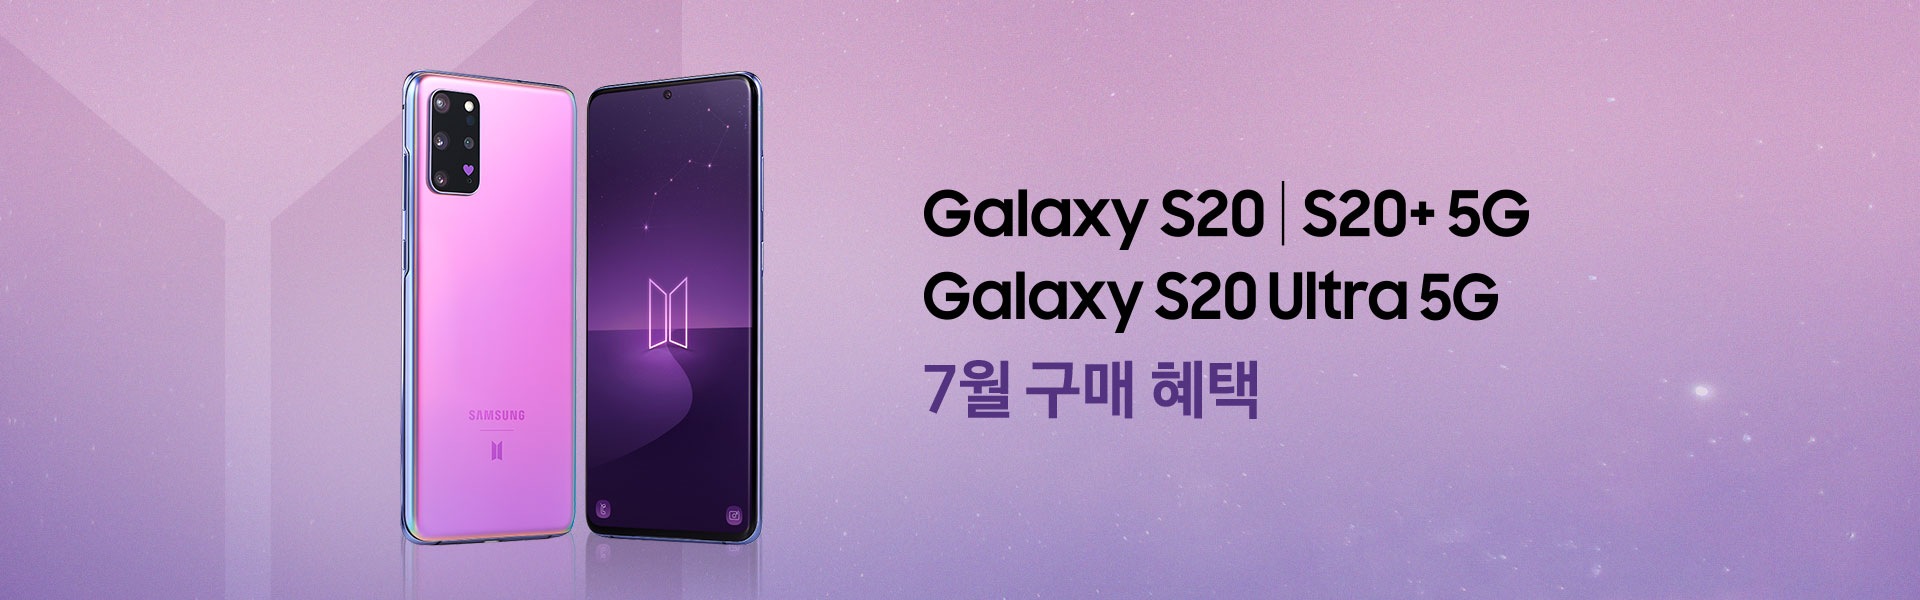 Galaxy S20 5G 4월 구매 혜택 